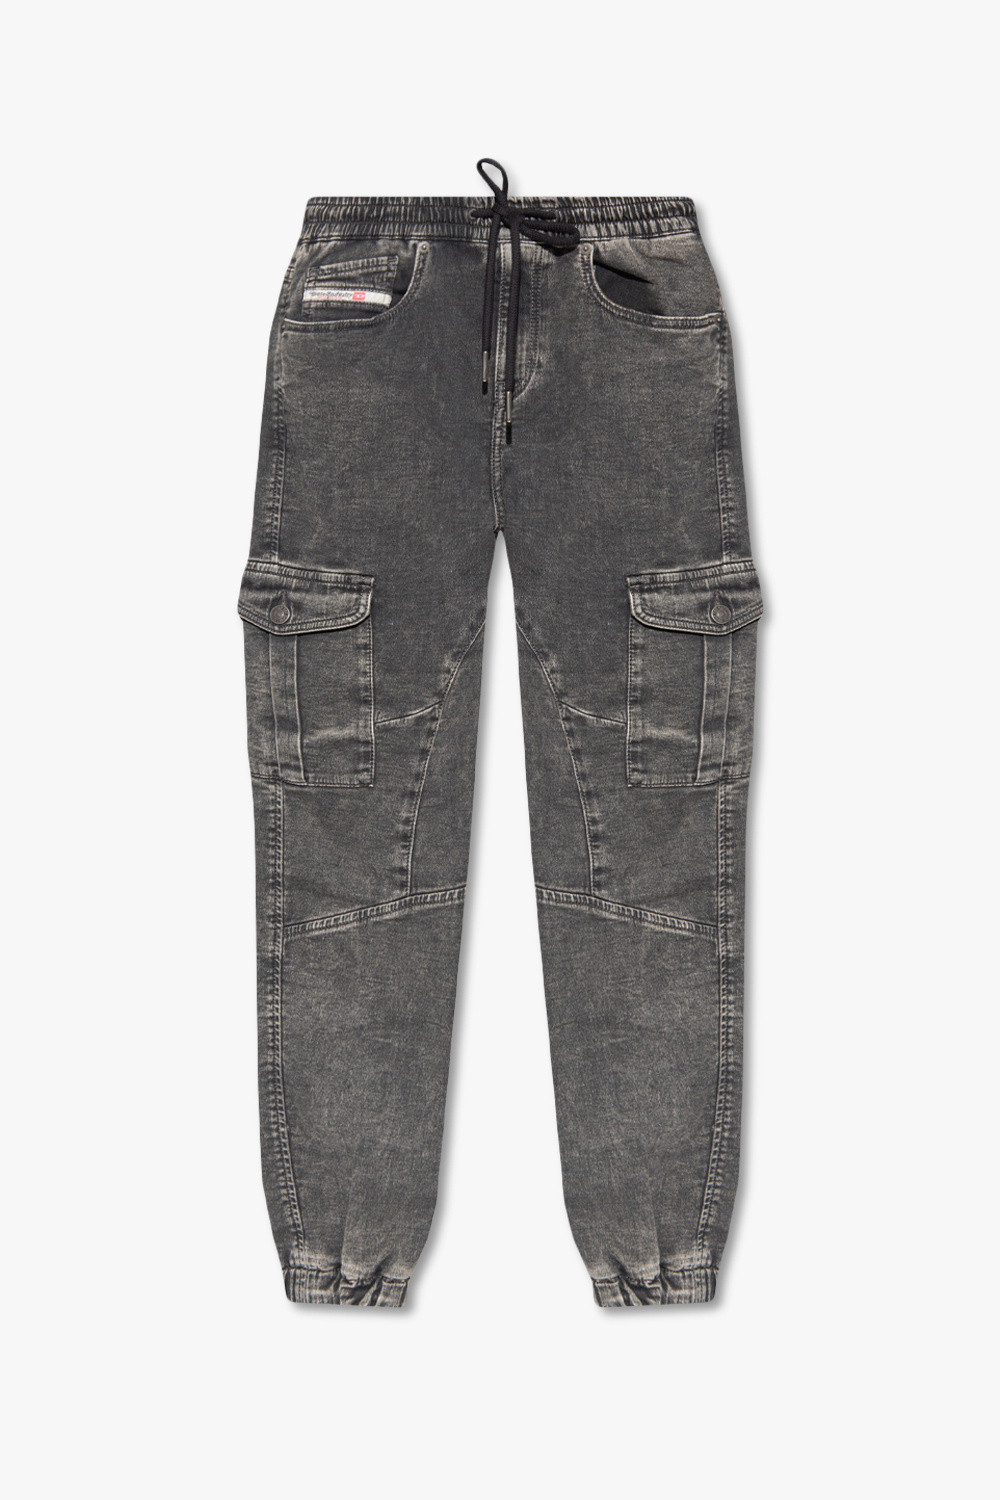 GenesinlifeShops Germany - URSY' jeans Diesel - Grey 'D - Slogan Taped Tie  Dye Leggings And T-Shirt Set 3-16yrs